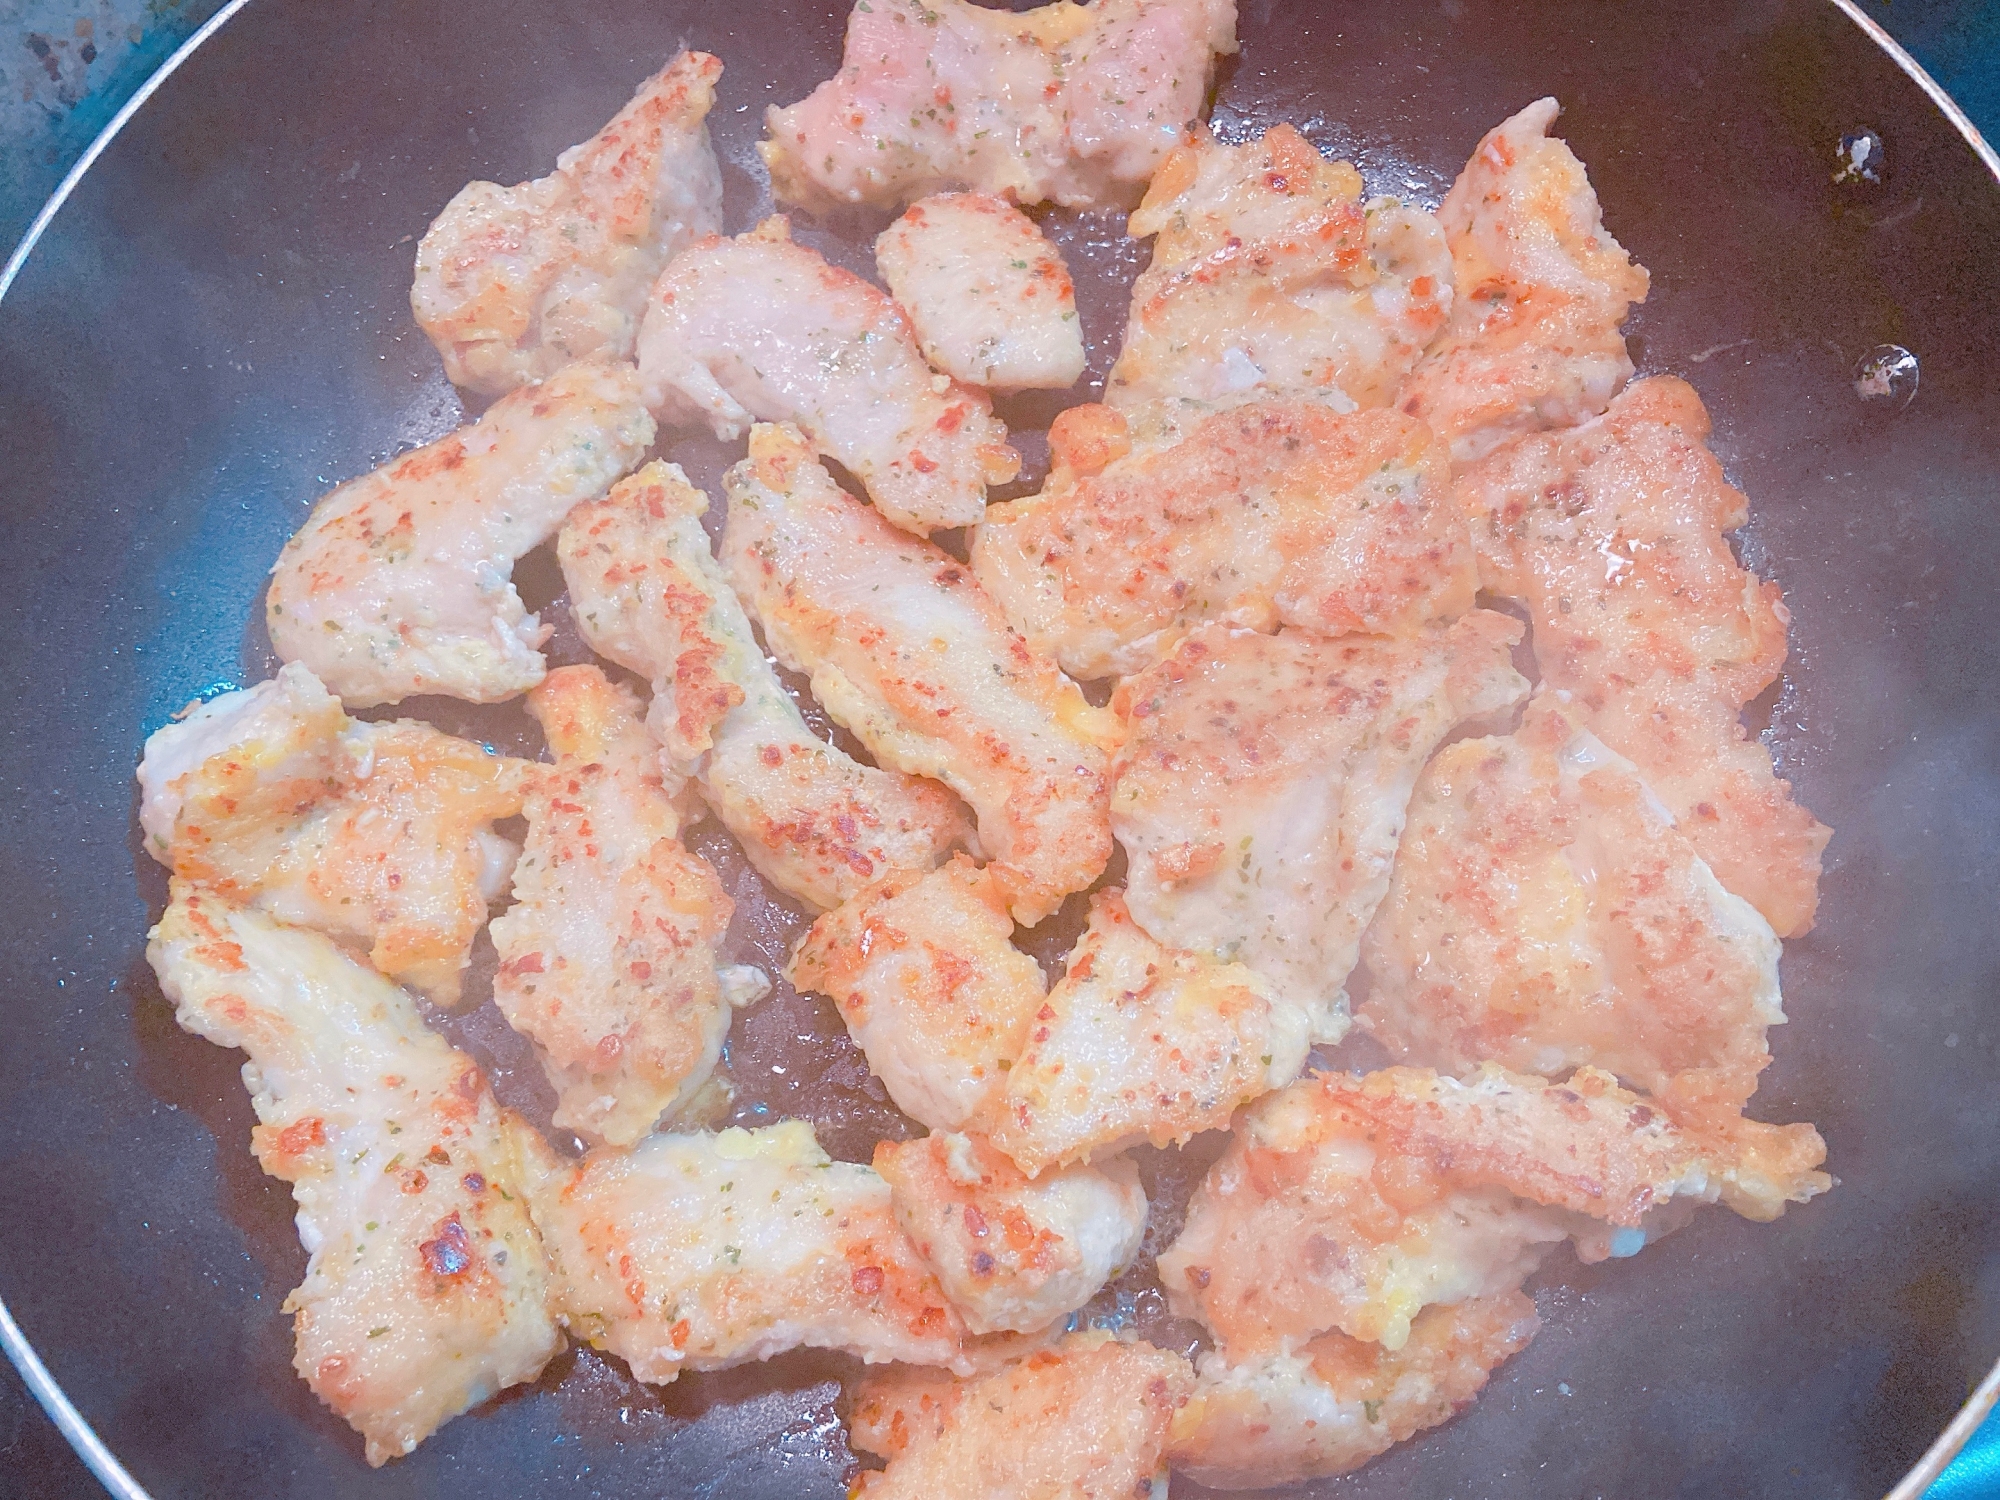 袋とフライパン1つで 簡単鶏肉のピカタ レシピ 作り方 By Micha 楽天レシピ